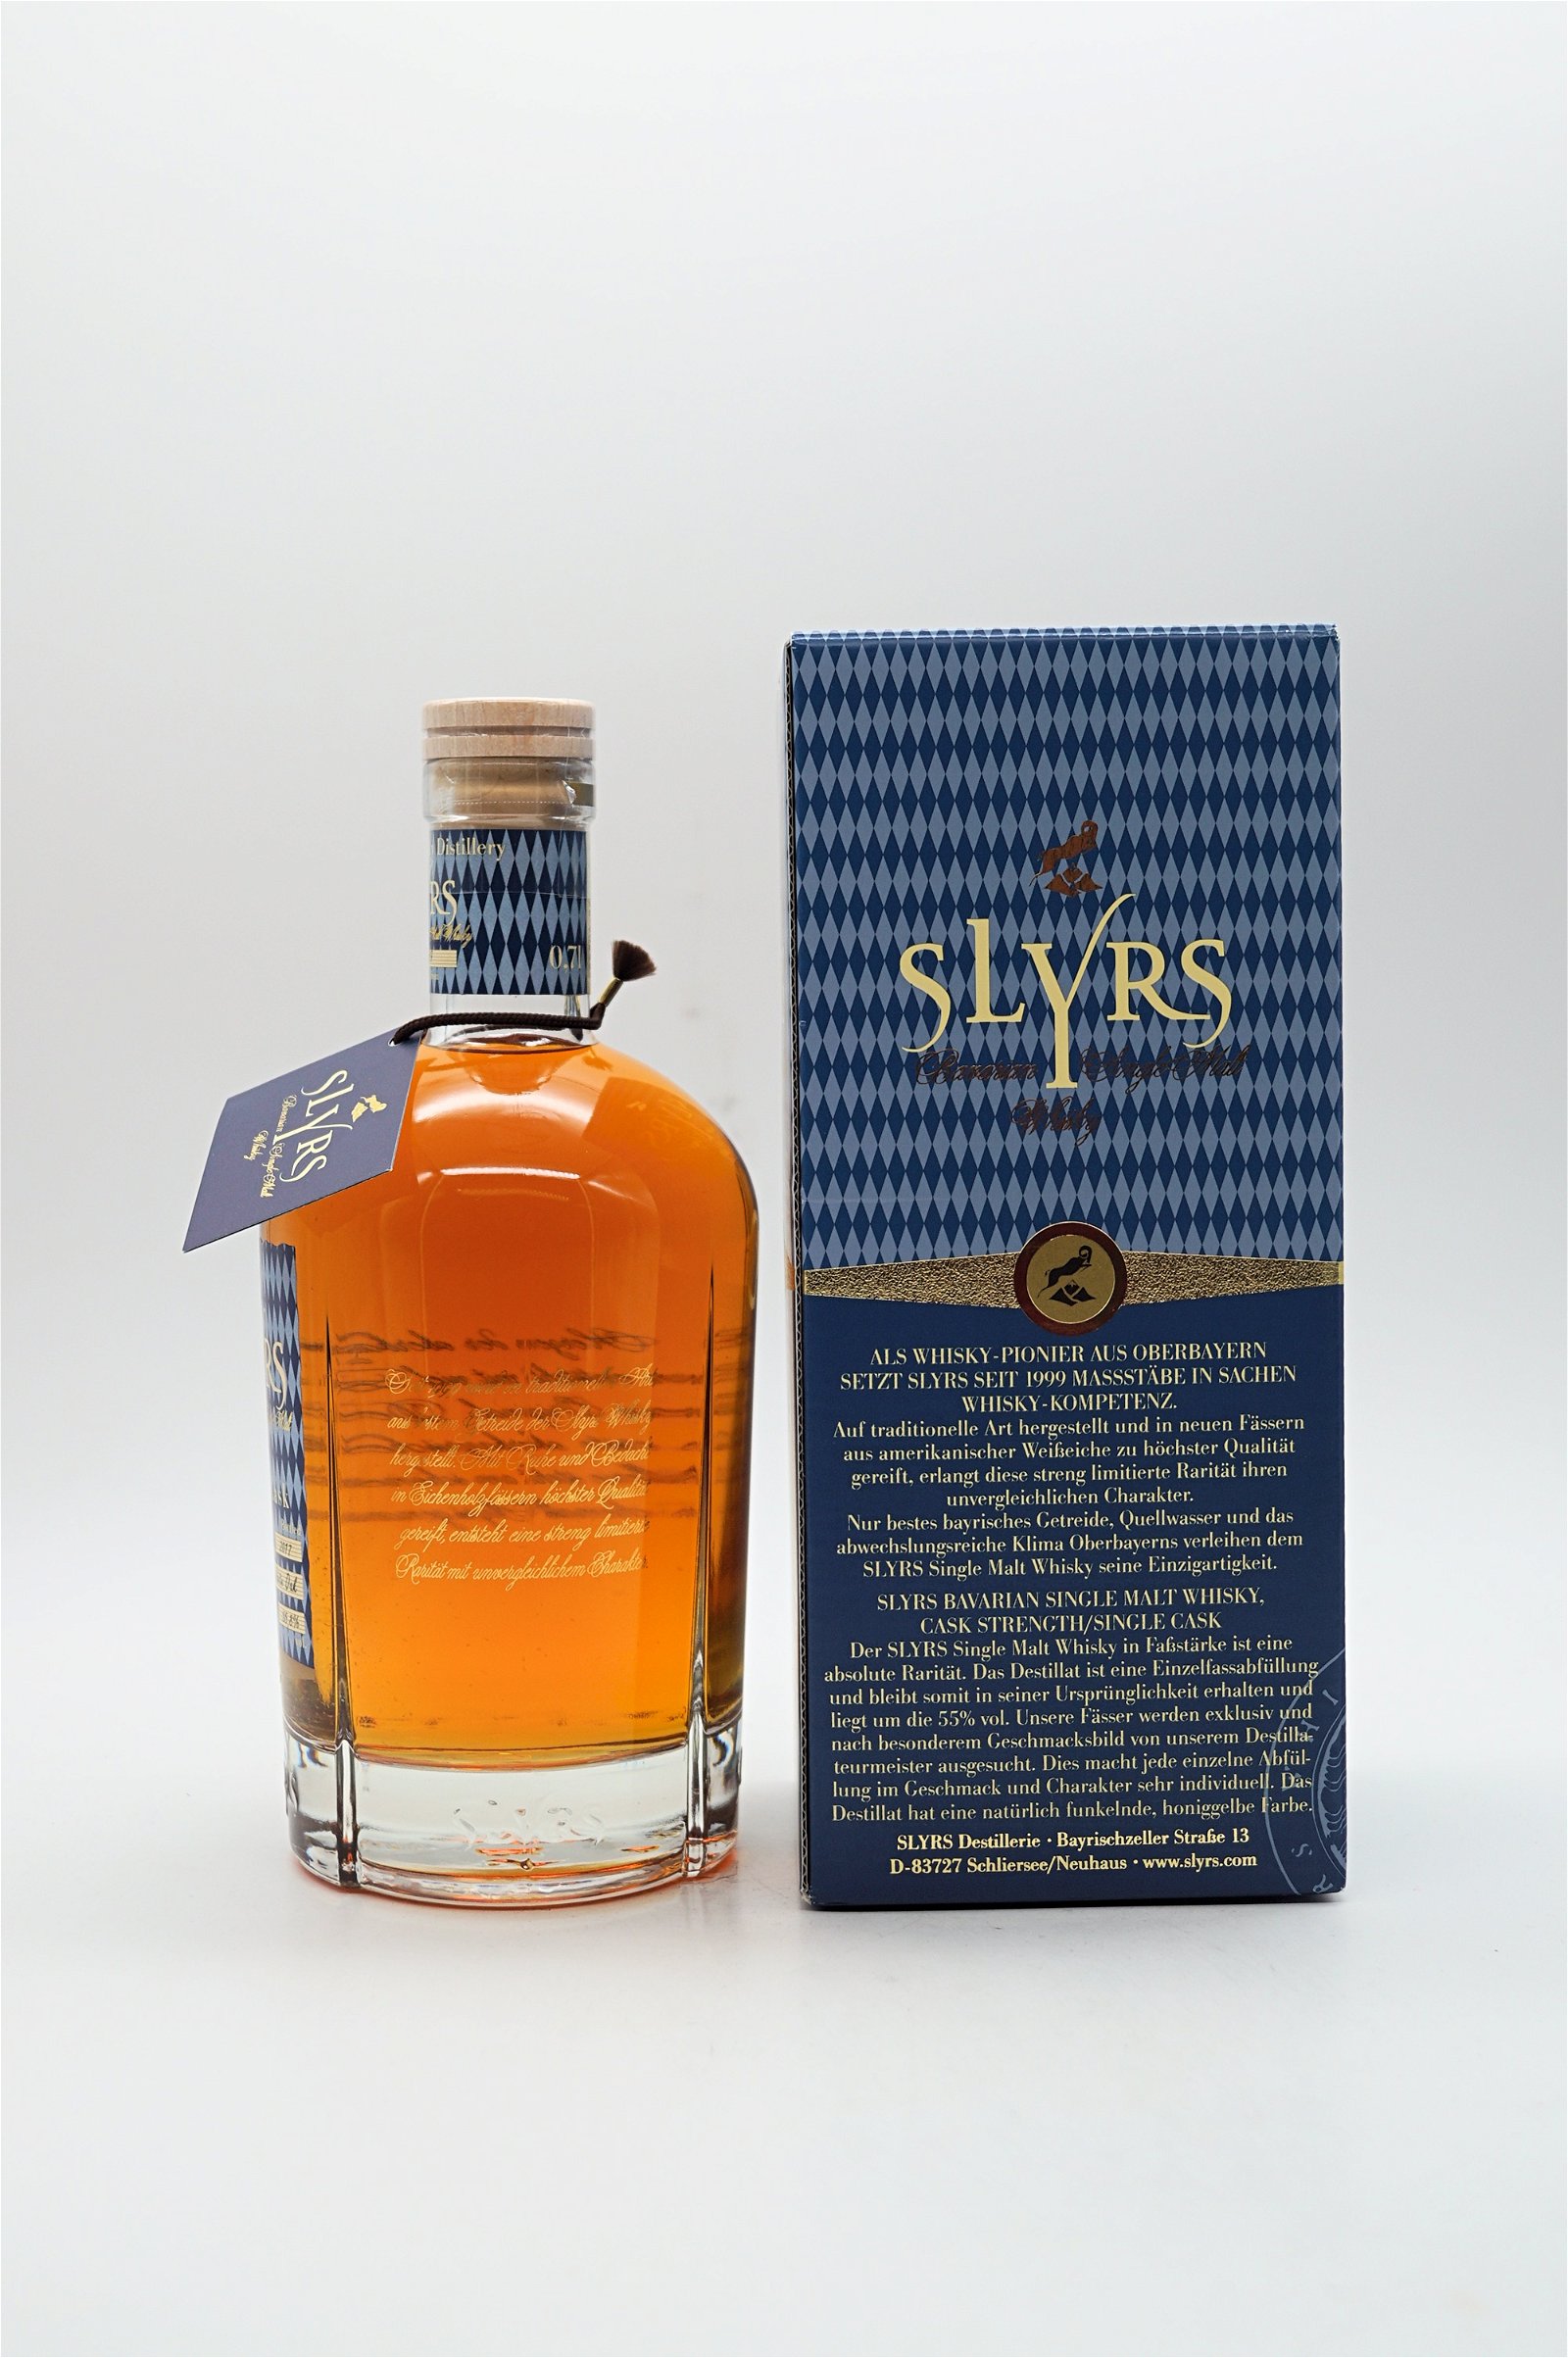 Slyrs Single Malt Whisky Cask Strength Single Cask Limited Edition